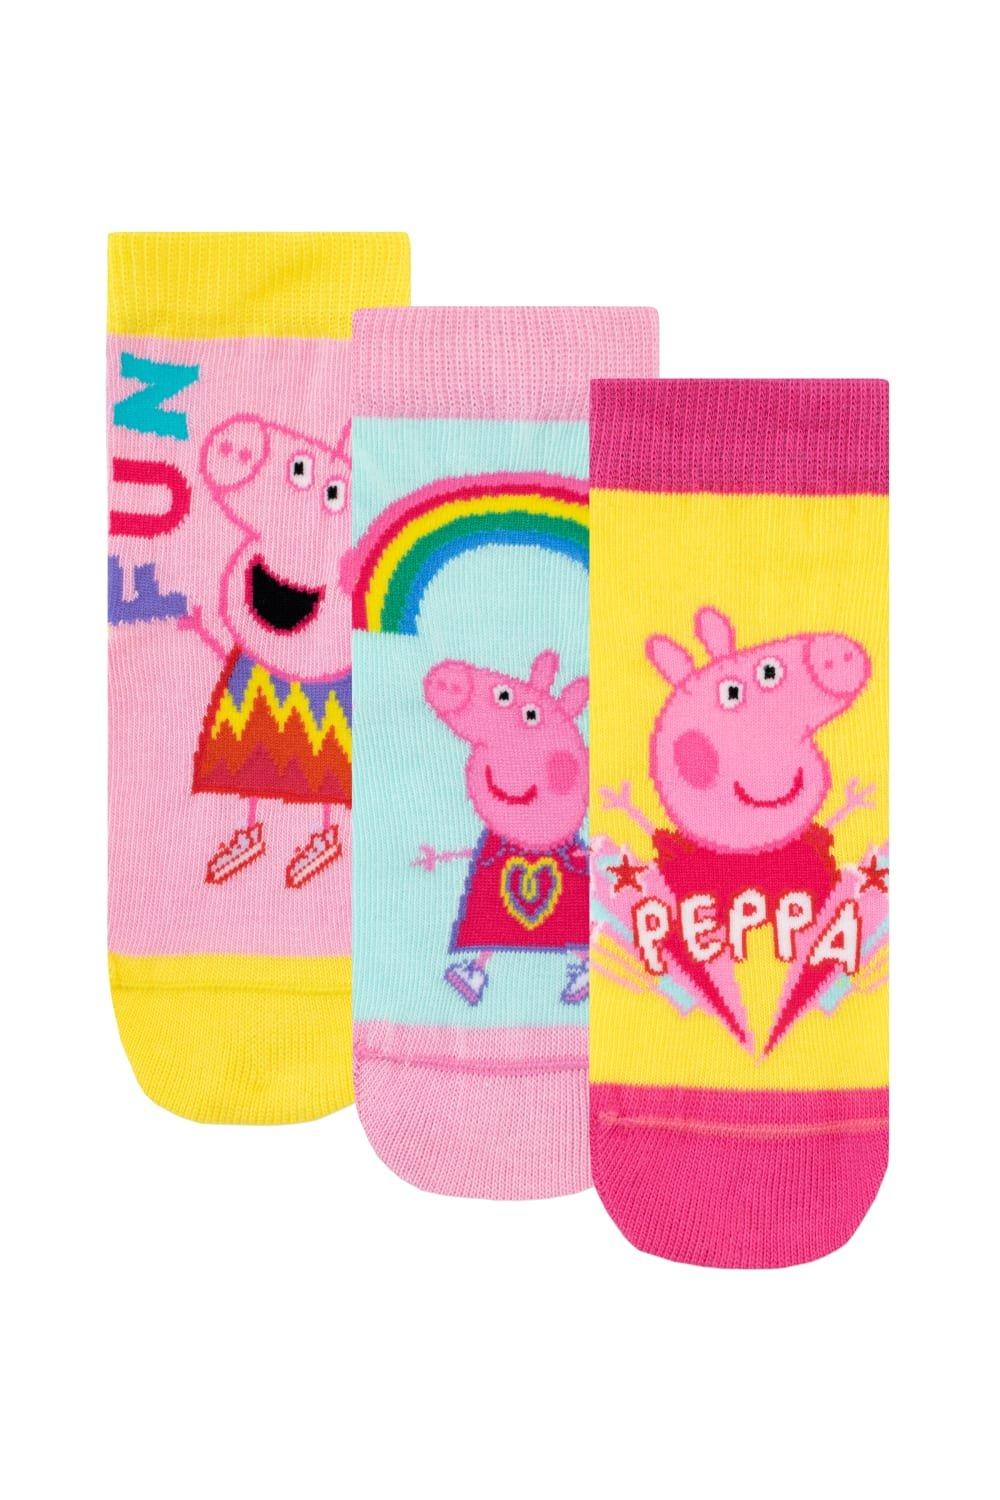 Набор носков Rainbow Fun, 3 шт. Peppa Pig, розовый подарочный набор 10в1 свинка пеппа